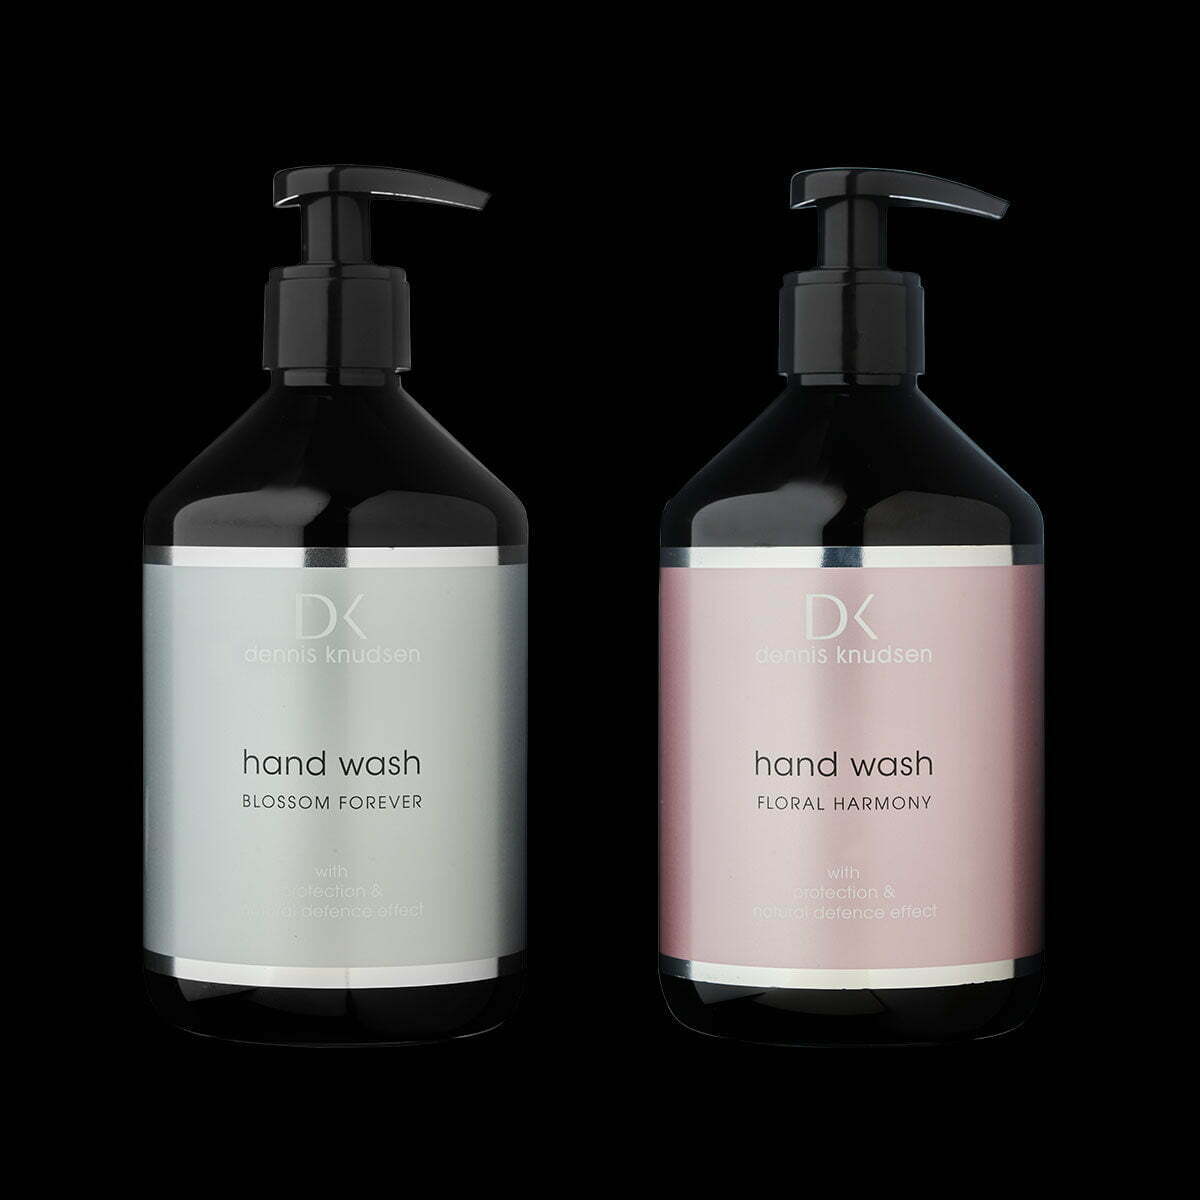 Hand Wash pakke med hand wash floral harmony blossom forever dennis knudsen professional pakke